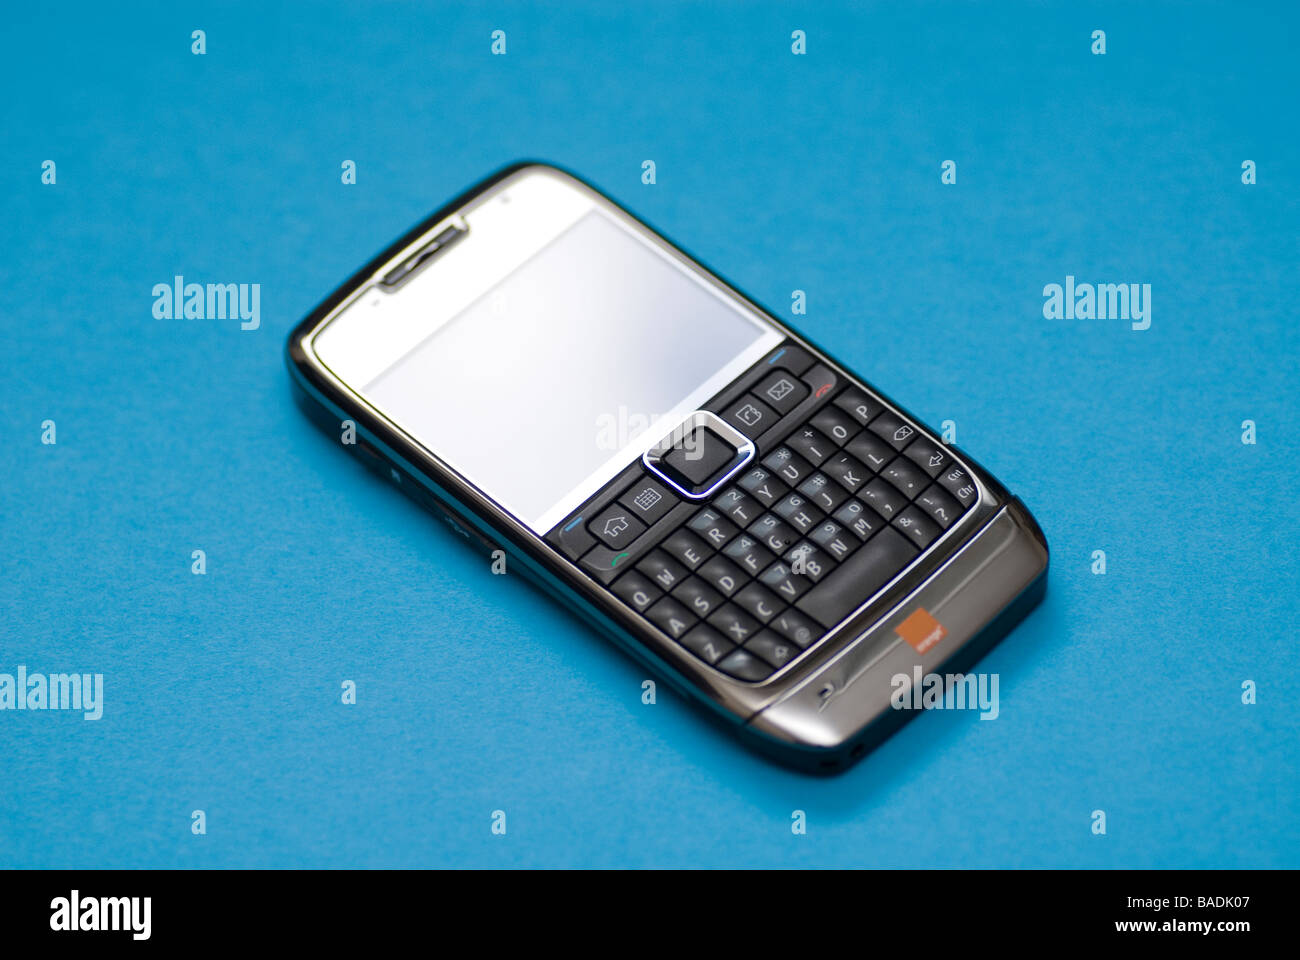 Teléfono móvil Nokia E71 con teclado QWERTY contra un fondo azul. Foto de stock